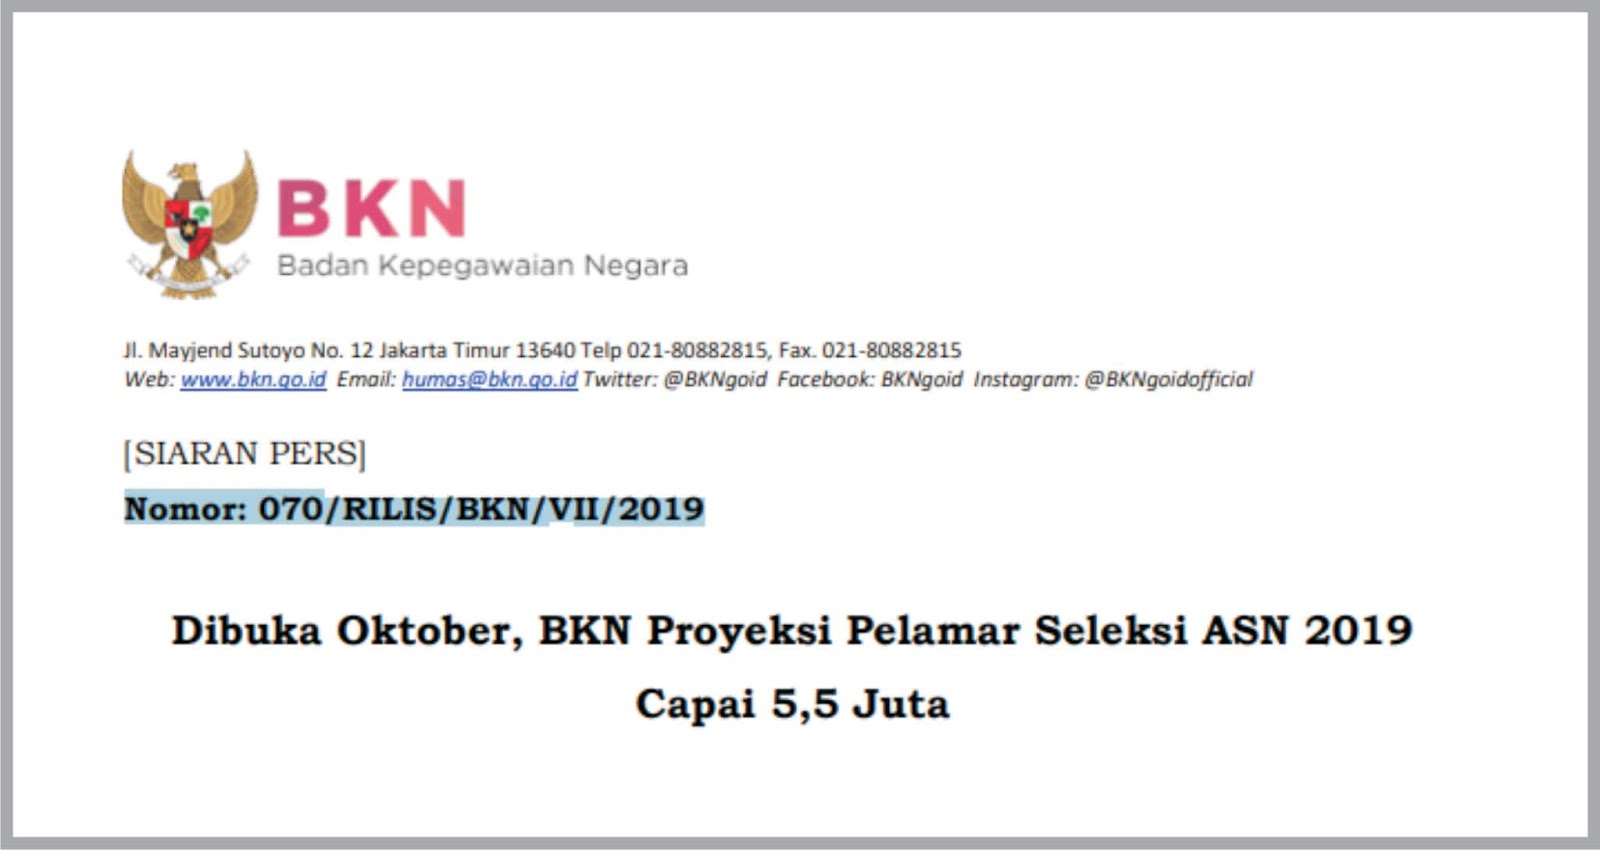 Dibuka Oktober, BKN Proyeksi Pelamar Seleksi ASN 2019 Capai 5,5 Juta - Siaran Pers yang dikeluarkan oleh BKN dengan nomer siaran : 070/RILIS/BKN/VII/2019.